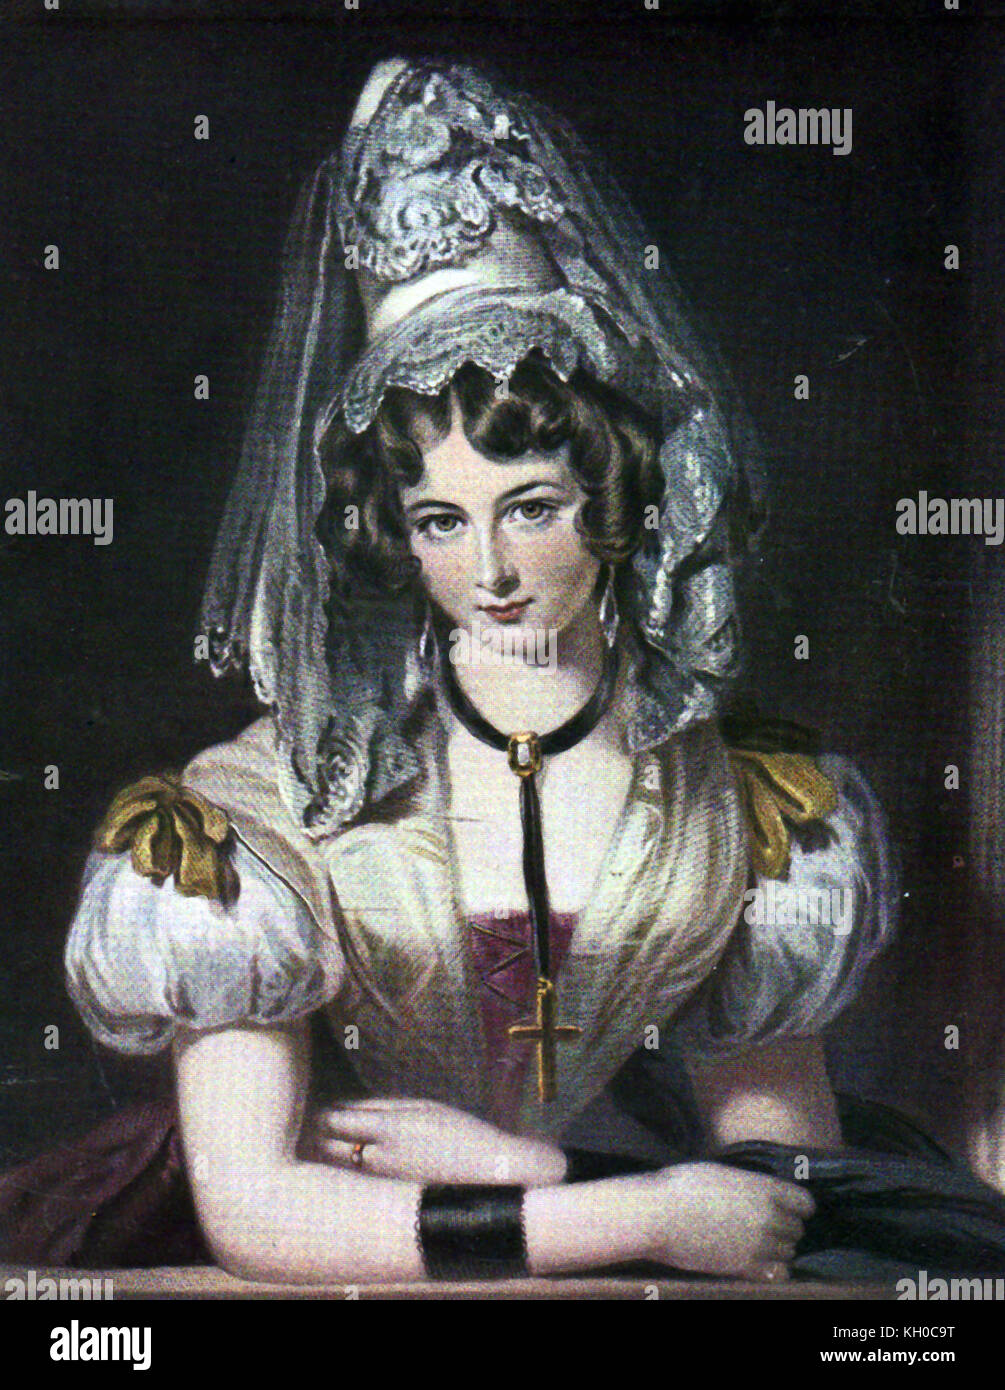 Ein farbiges Porträt der Lady Maria Theresia Lewis (aka Maria Theresa Villiers oder Maria Theresia Lister, der britische Schriftsteller und Biograph. Die Schwester des 4. Earl of Clarendon - Stockfoto